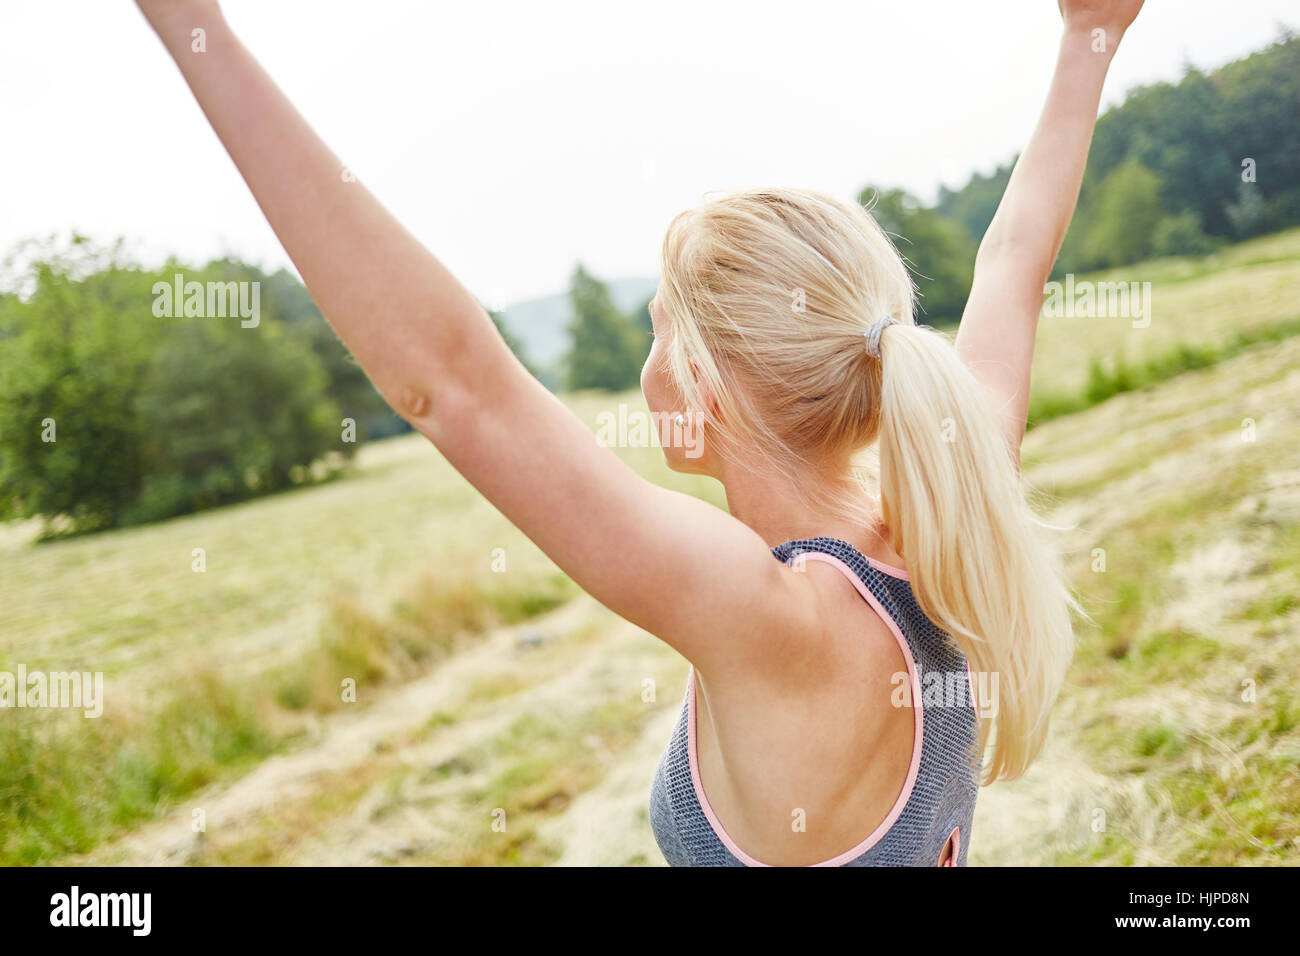 Jeune femme s'étendant ses bras en l'air en bien-être exercice de relaxation Banque D'Images